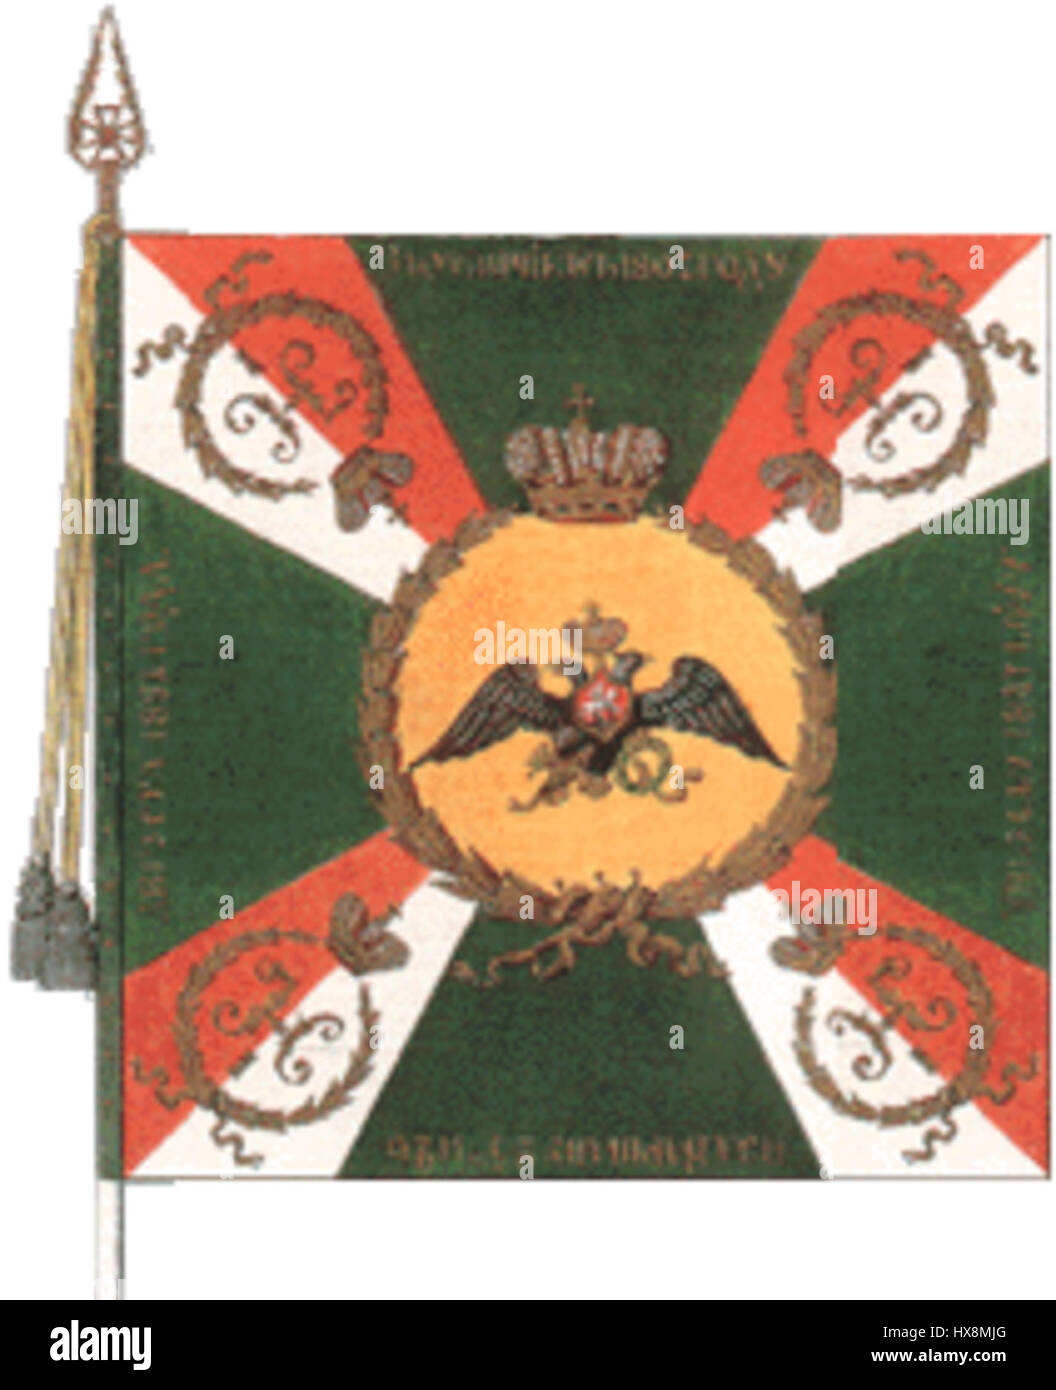 Знамя Московского гренадерского полка 1812